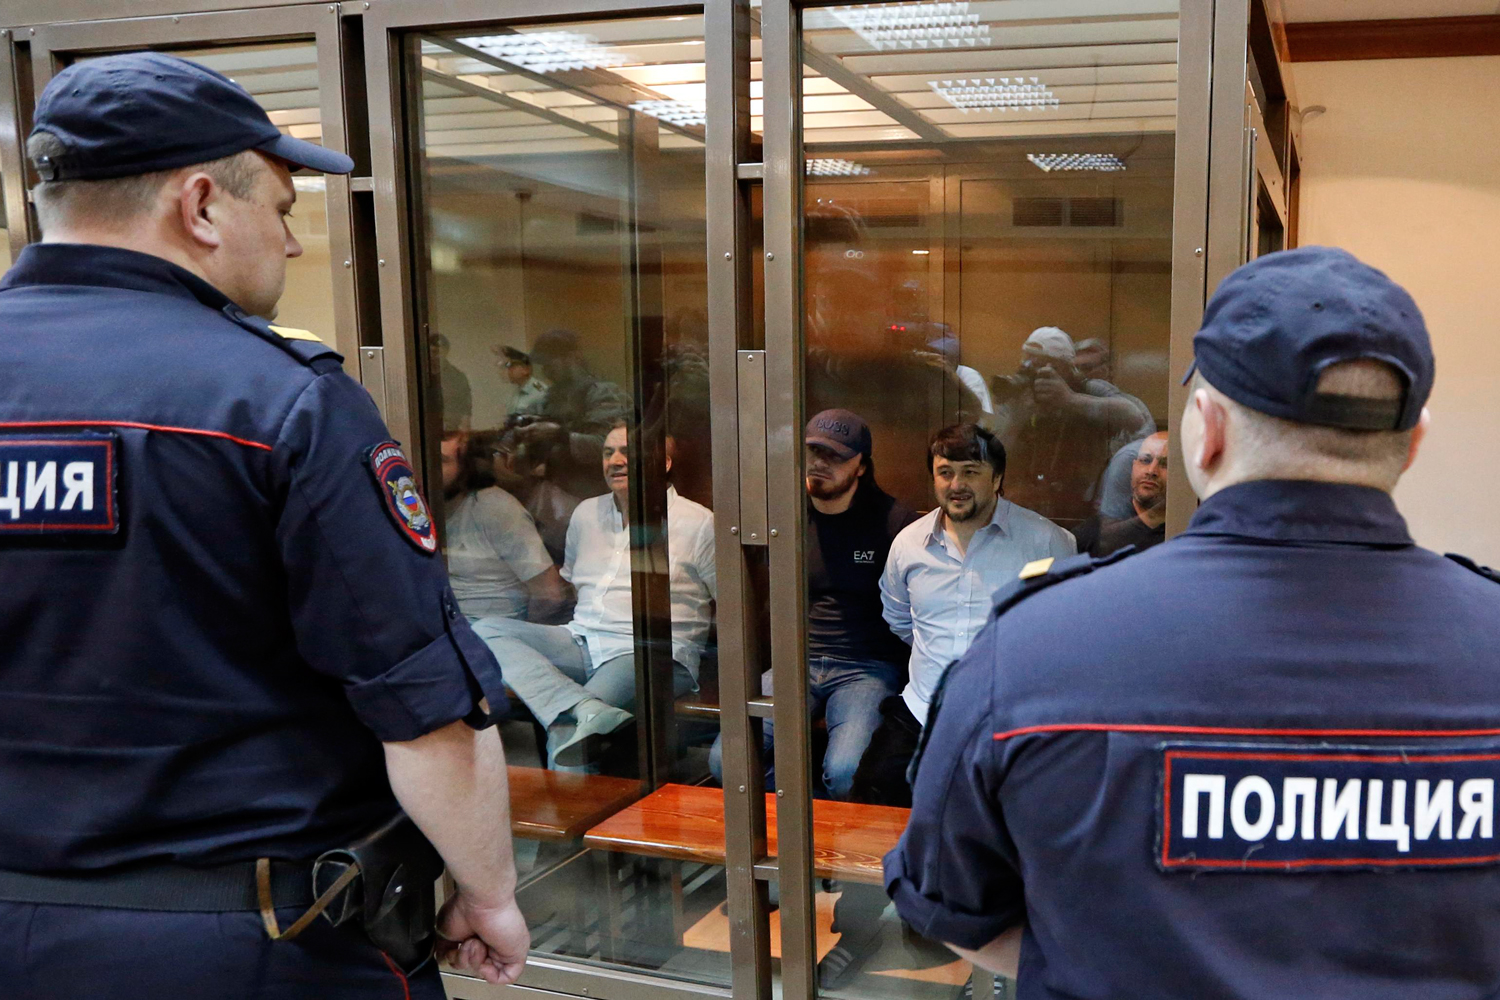 Condenan a cadena perpetua a los asesinos de Anna Politkóvskaya